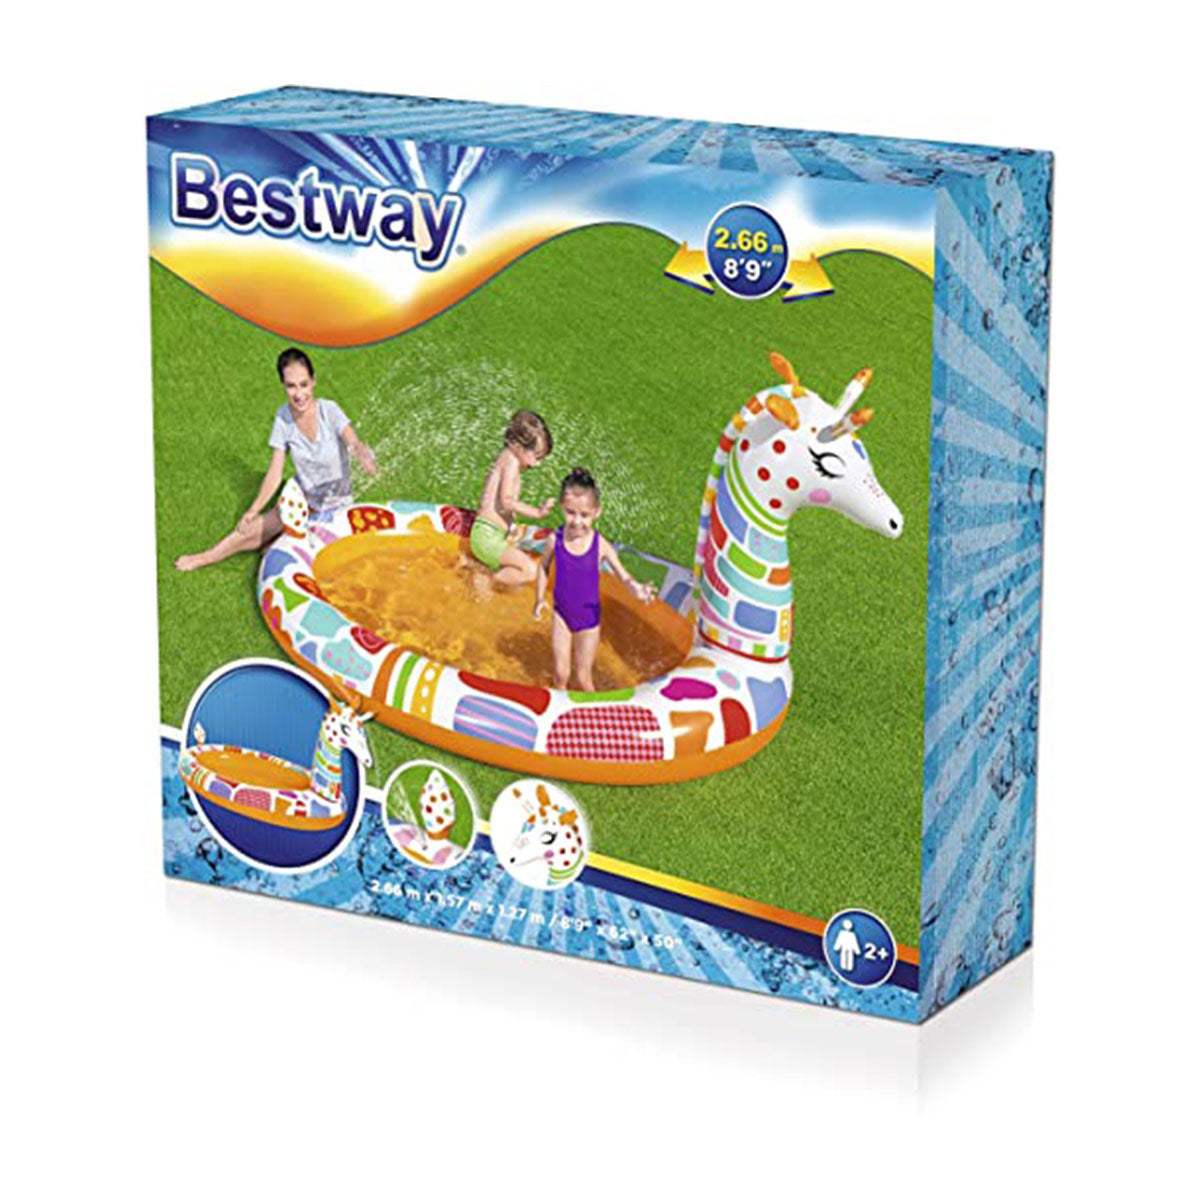 Bestway - Kids Play Pool Inflatable Pool 53089